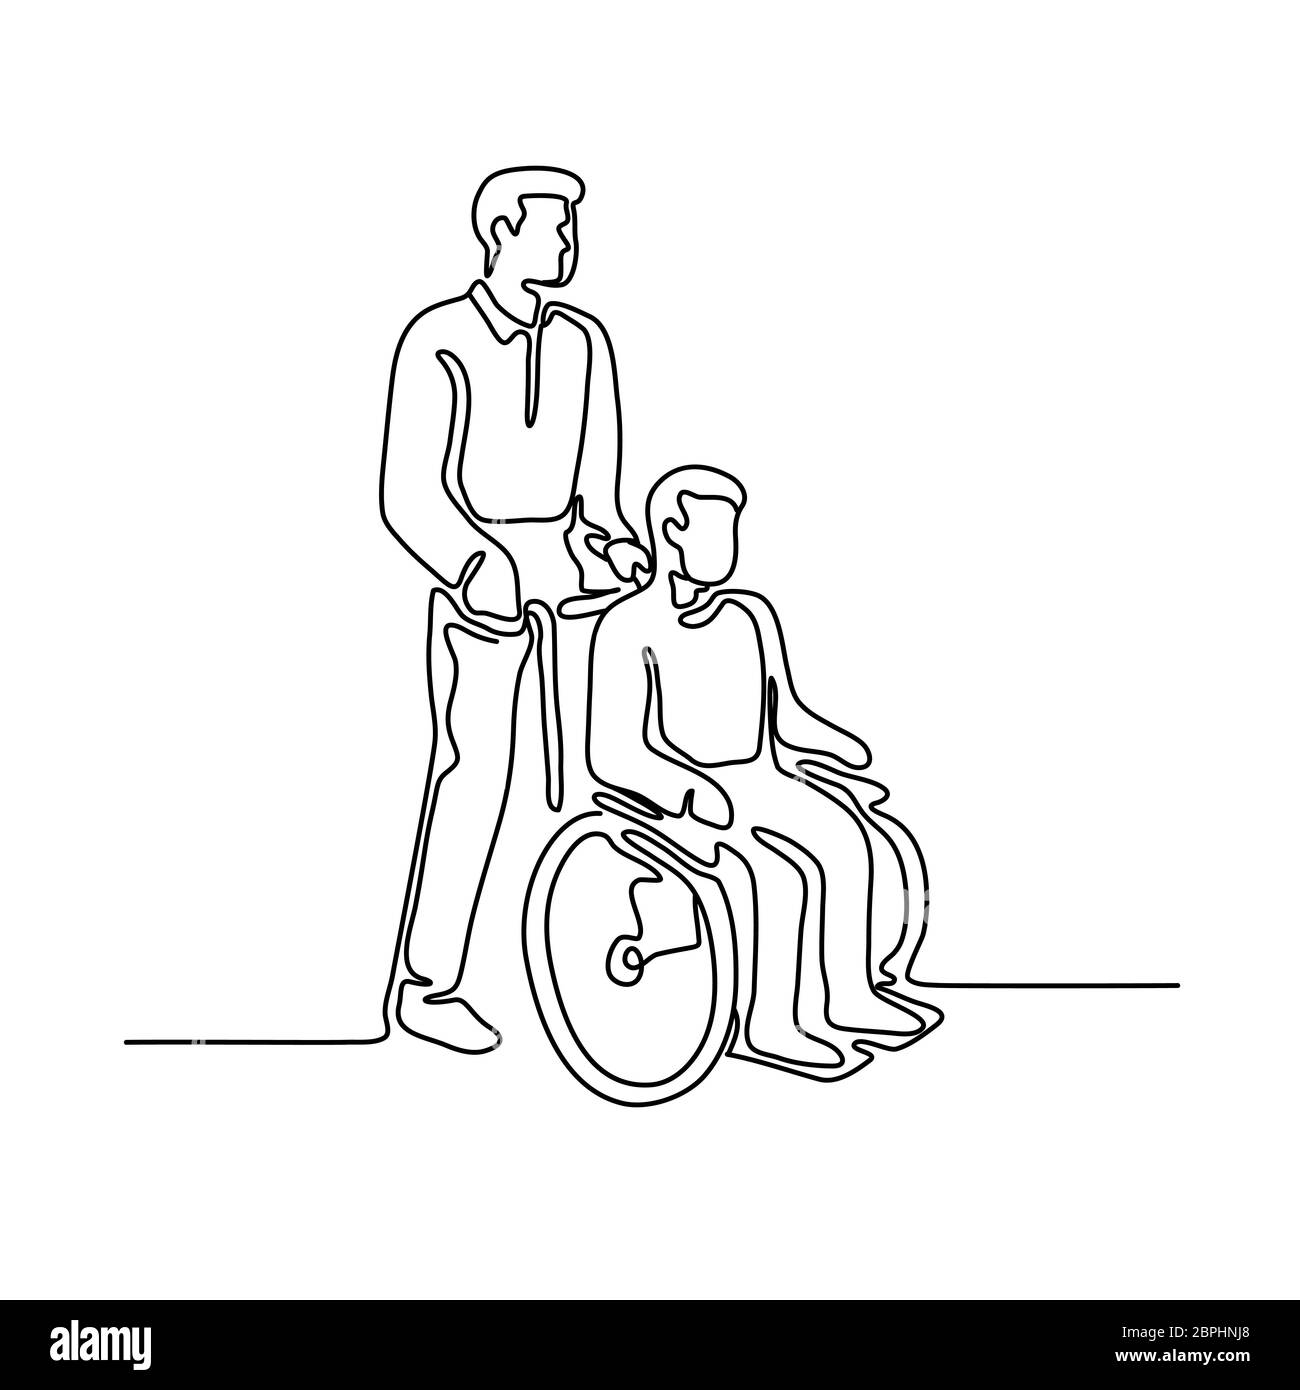 Linea continua illustrazione di un paziente in ospedale o disattivare la persona con handicap o di seduta essendo spingere su wheelcahir da un infermiere realizzato a monolin Foto Stock